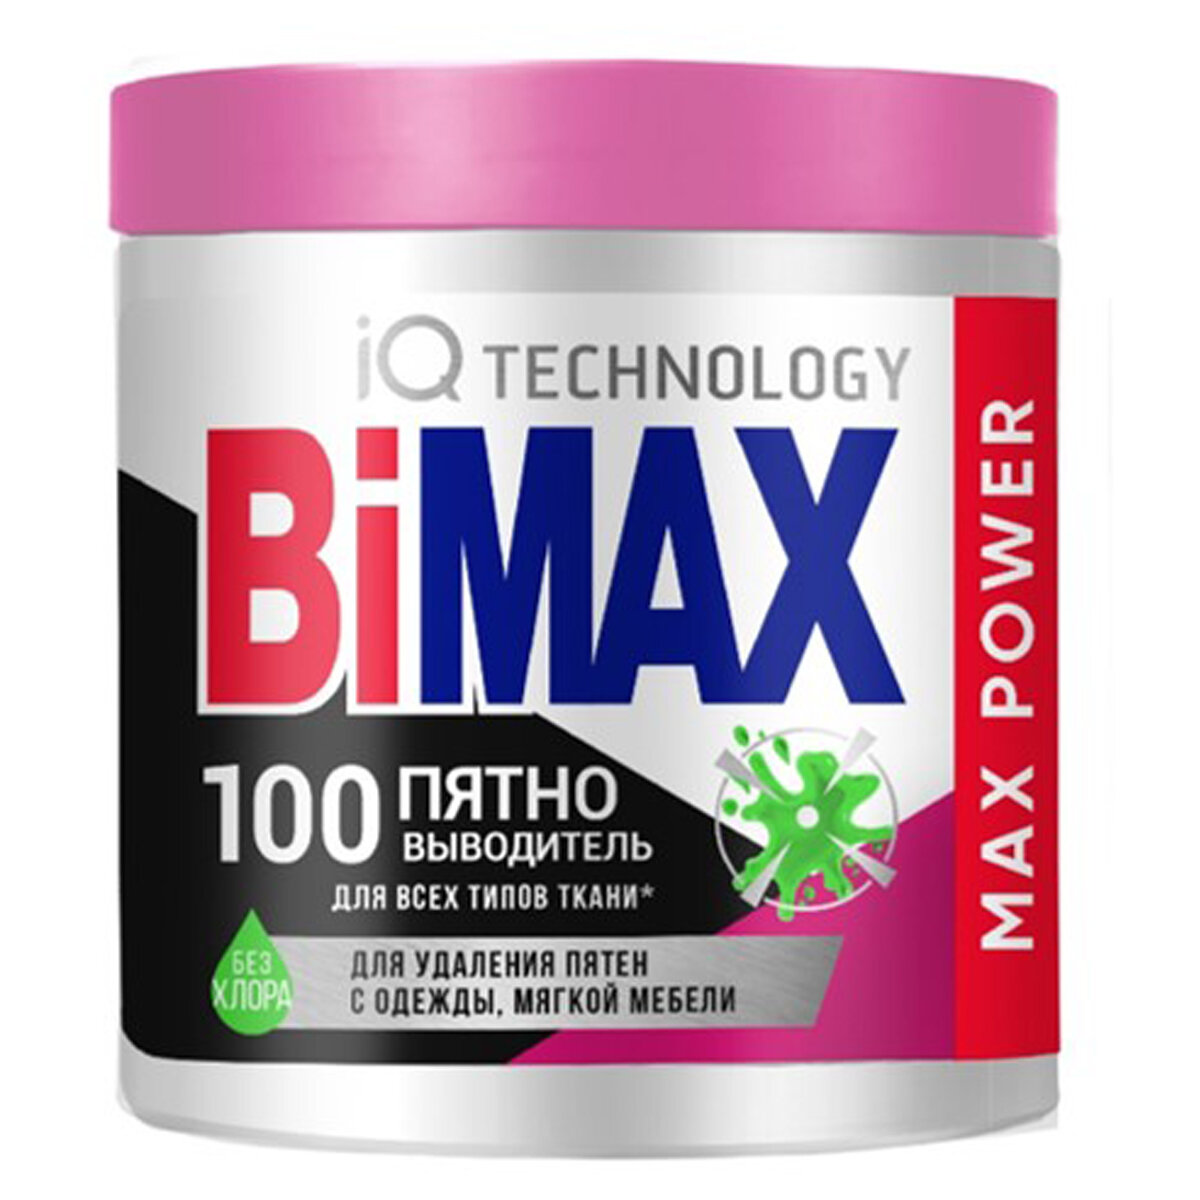 Пятновыводитель BiMax "100 пятно", порошок, 450г, банка (арт. 357334)